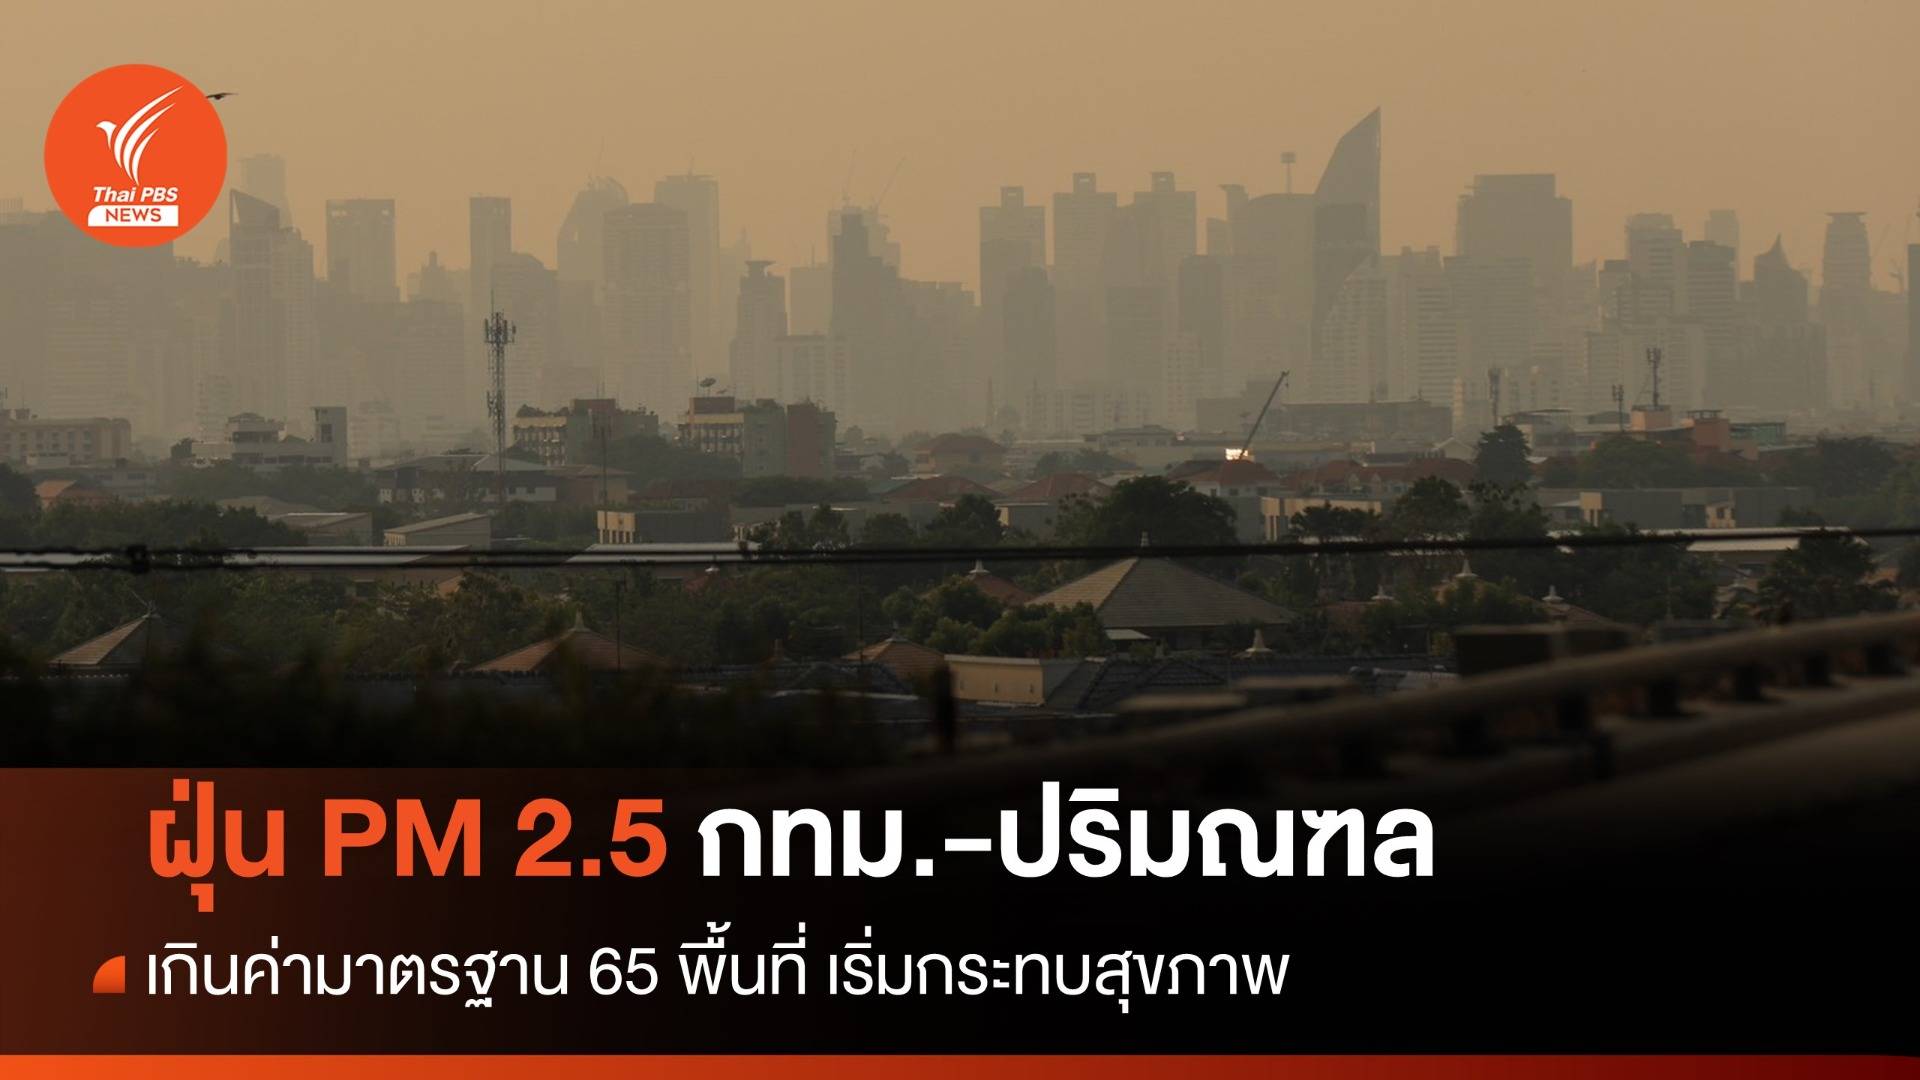 ฝุ่น PM 2.5 กทม.-ปริมณฑล เกินค่ามาตรฐาน 65 พื้นที่ เริ่มกระทบสุขภาพ